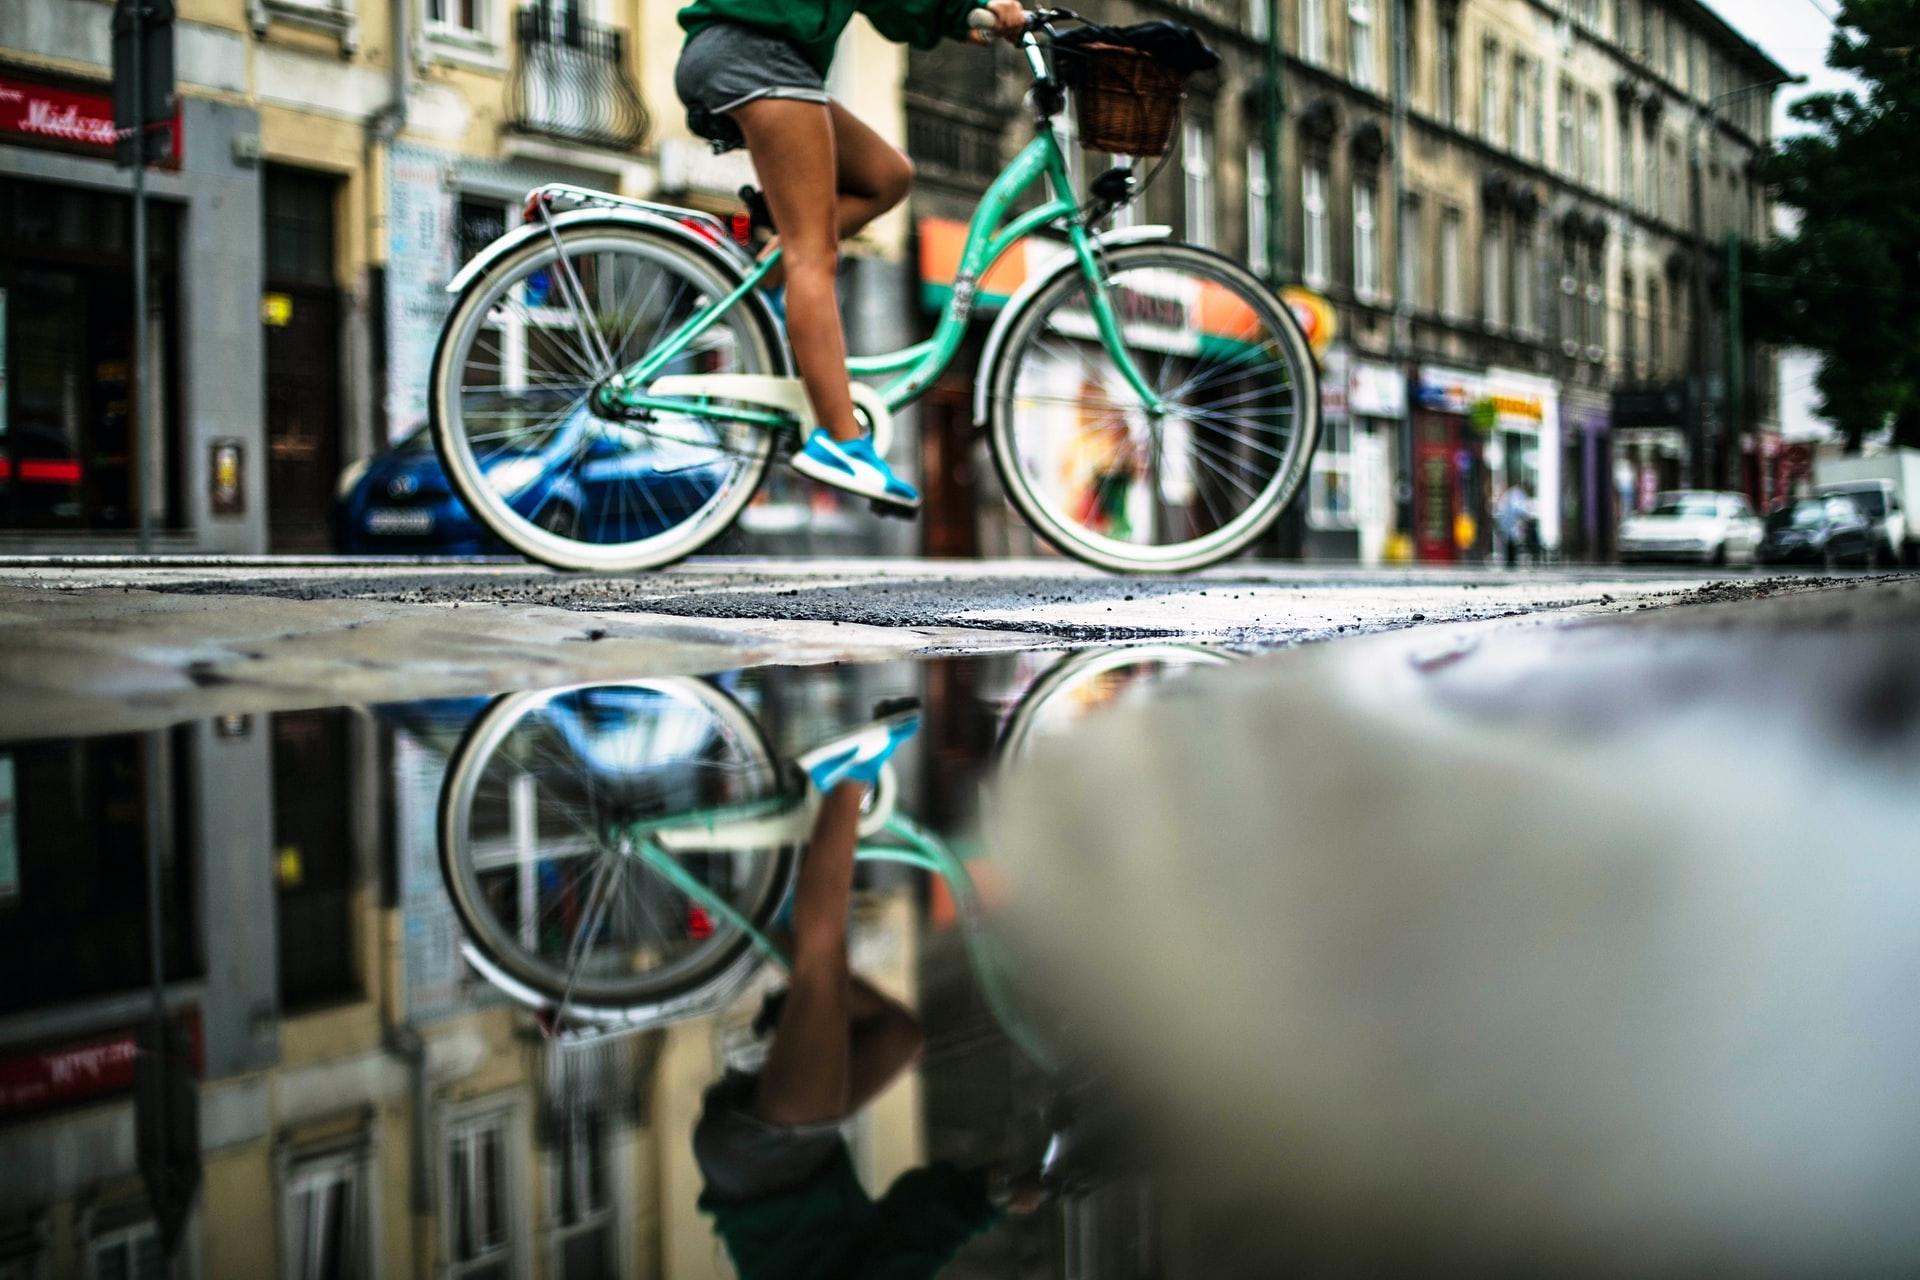 Explore Paris by bike